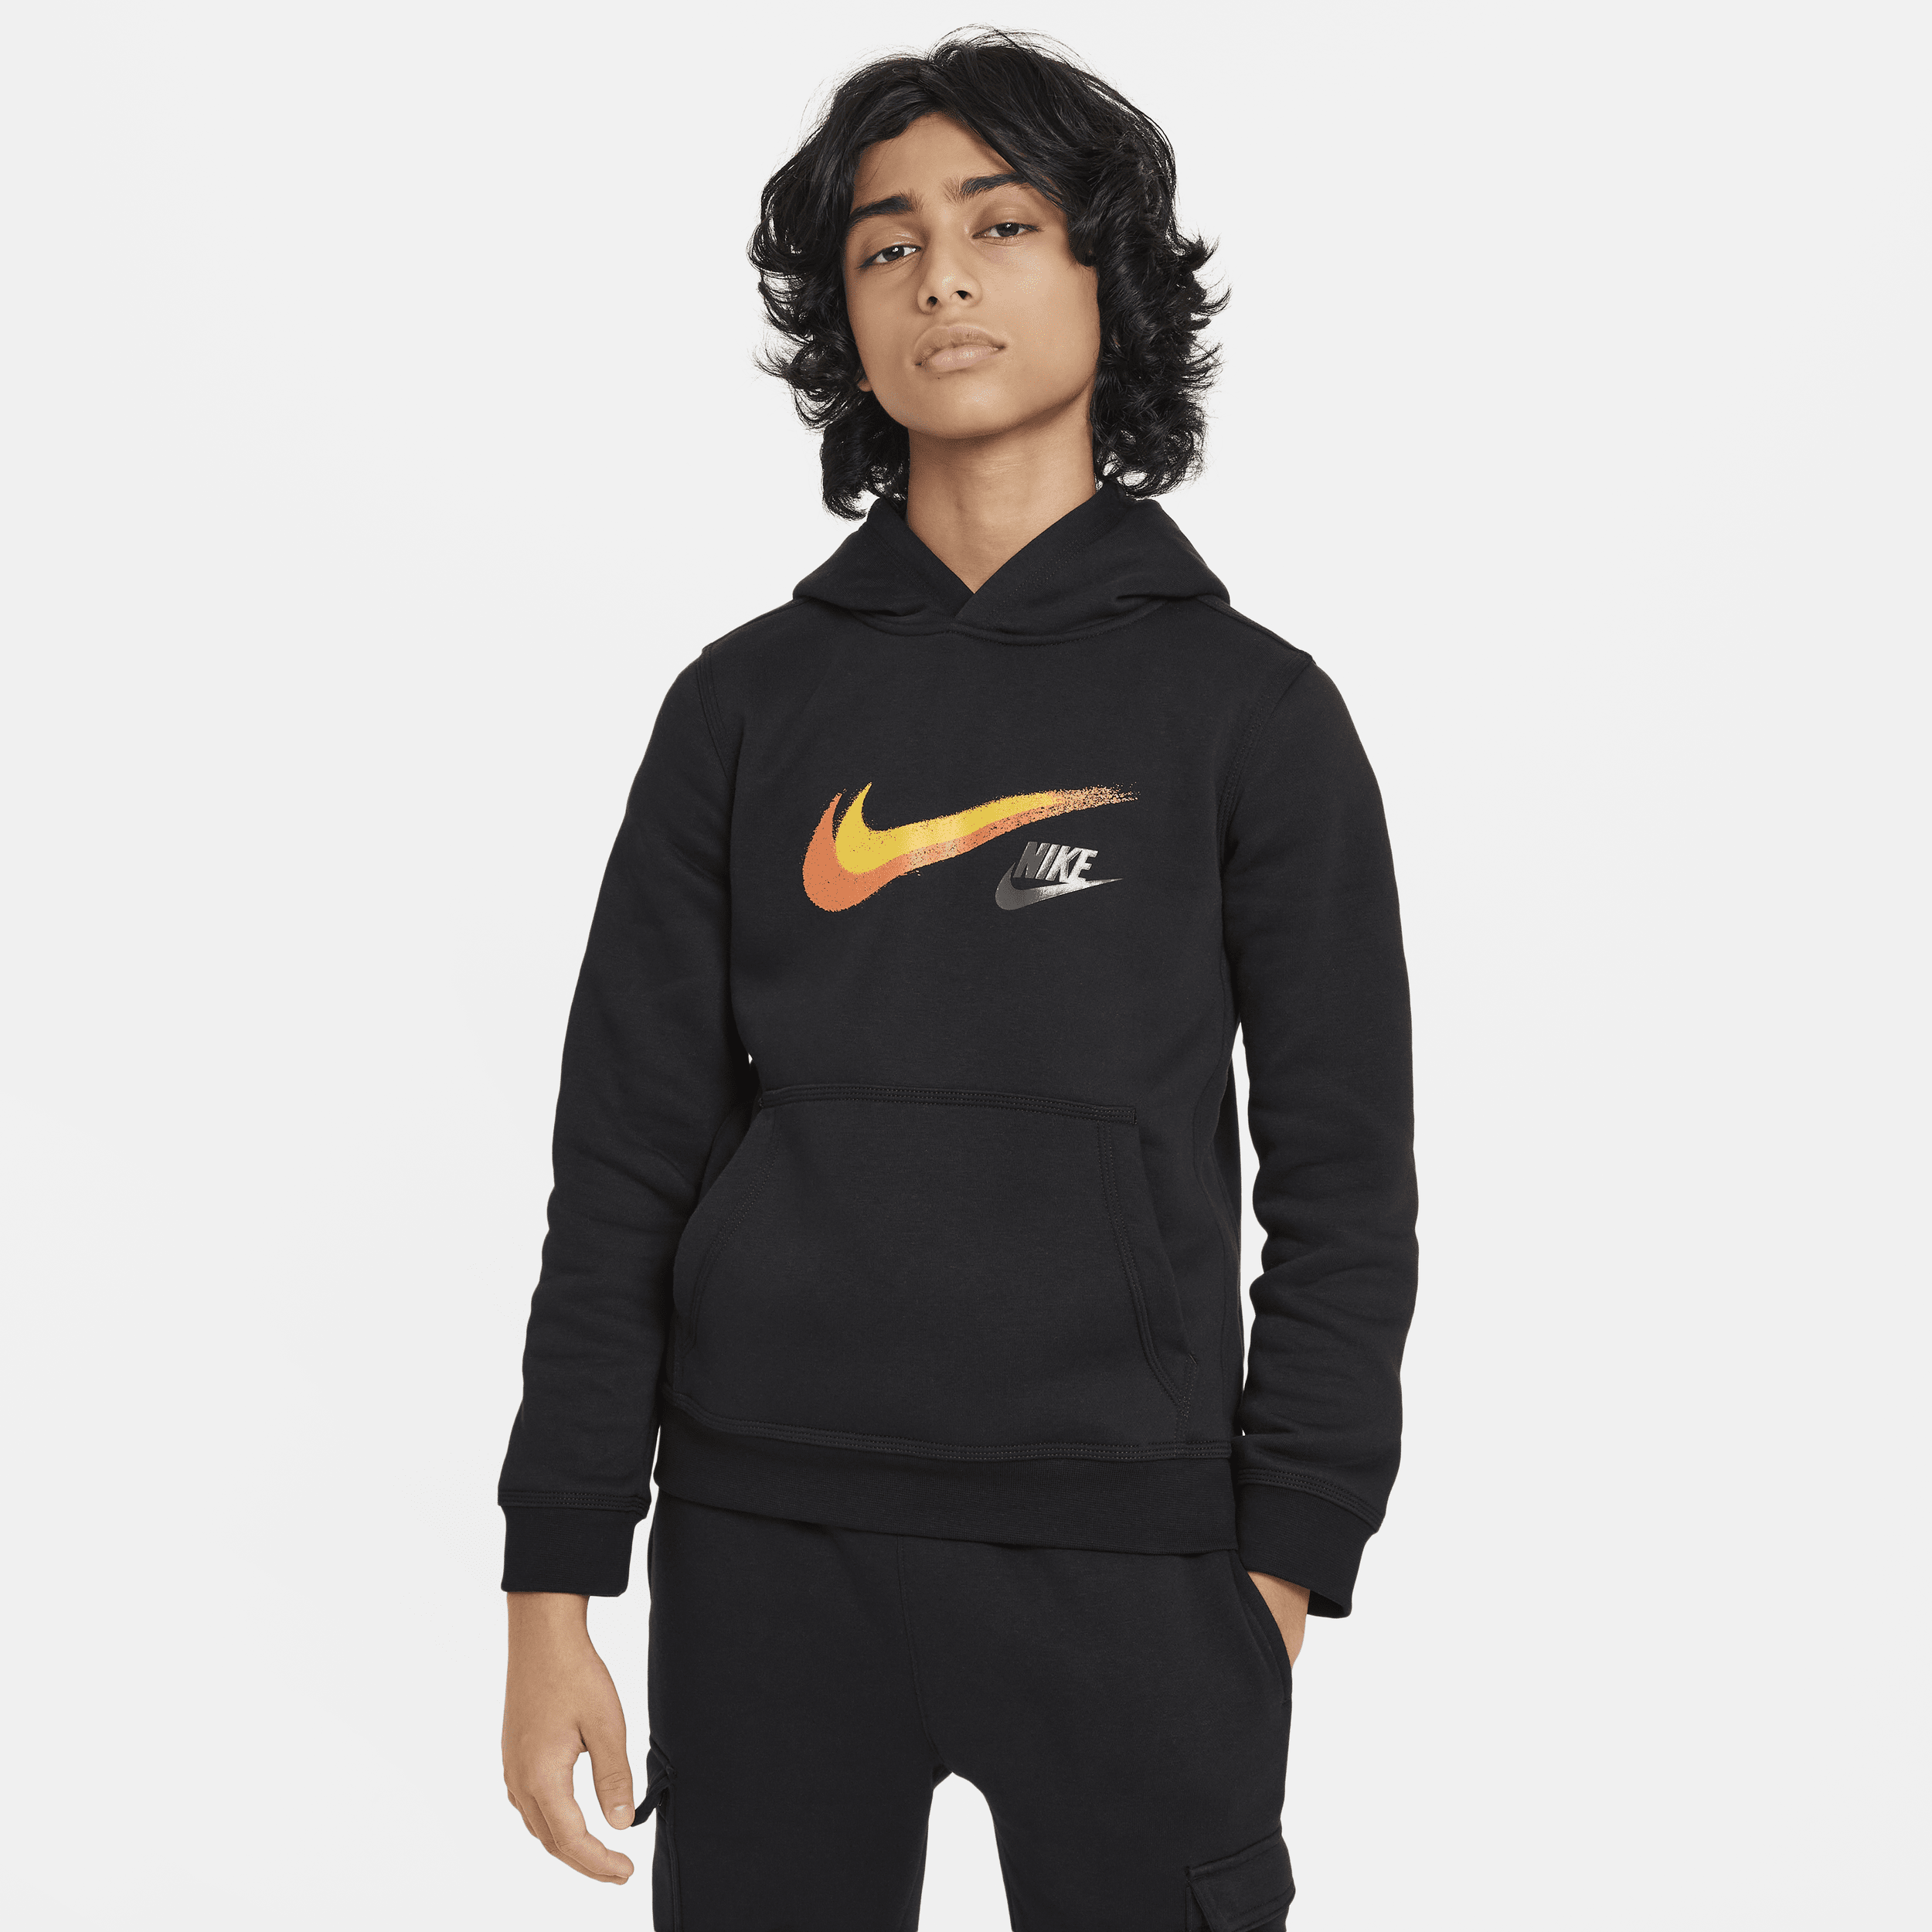 Nike Sportswear-pullover-hættetrøje i fleece med grafik til større børn (drenge) - sort